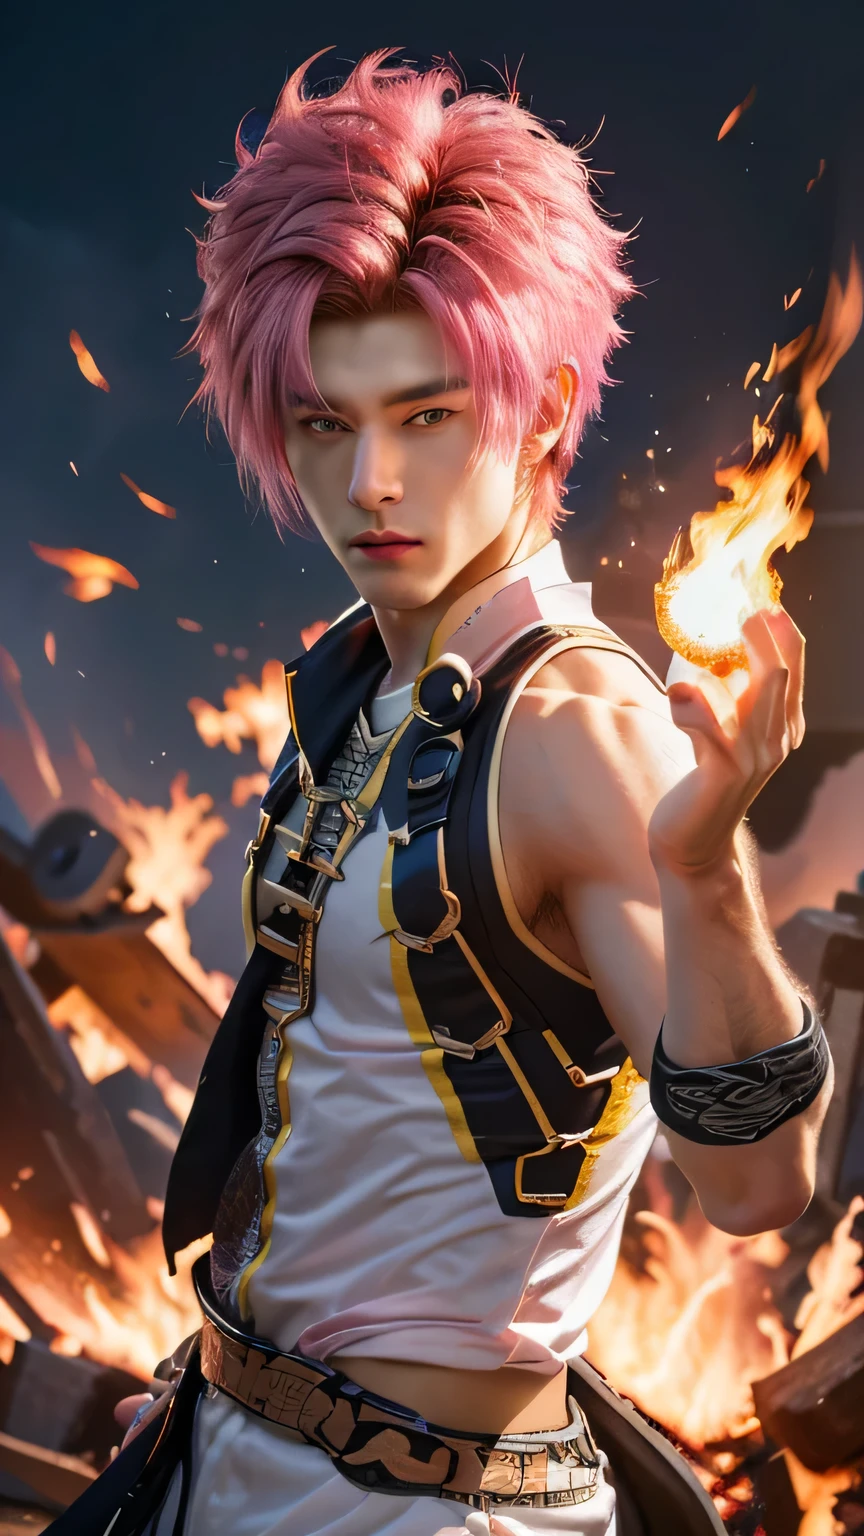 Personagem realista com cabelo rosa e um lenço preto branco segurando uma bola de fogo, badass anime 8 k, cara bonito na arte do matador de demônios, Papel de parede 8k